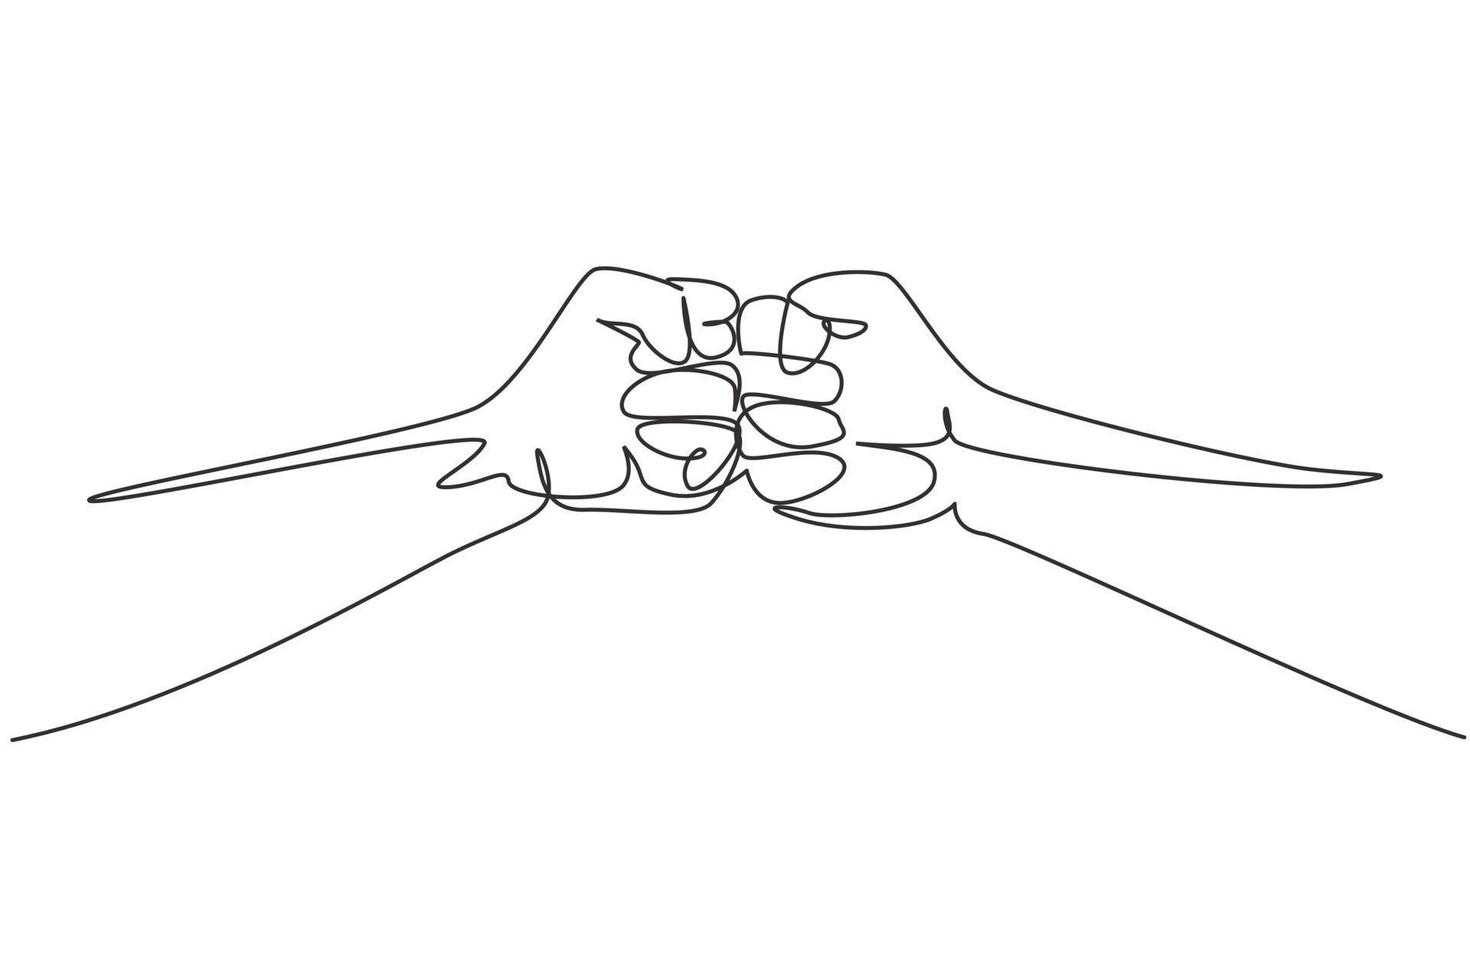 kontinuerlig en rad ritning två händer gör knytnäve bula. tecken eller symbol för makt, slag, attack, våld. kommunikation med handgester. ickeverbala tecken. enda rad design vektorgrafisk illustration vektor